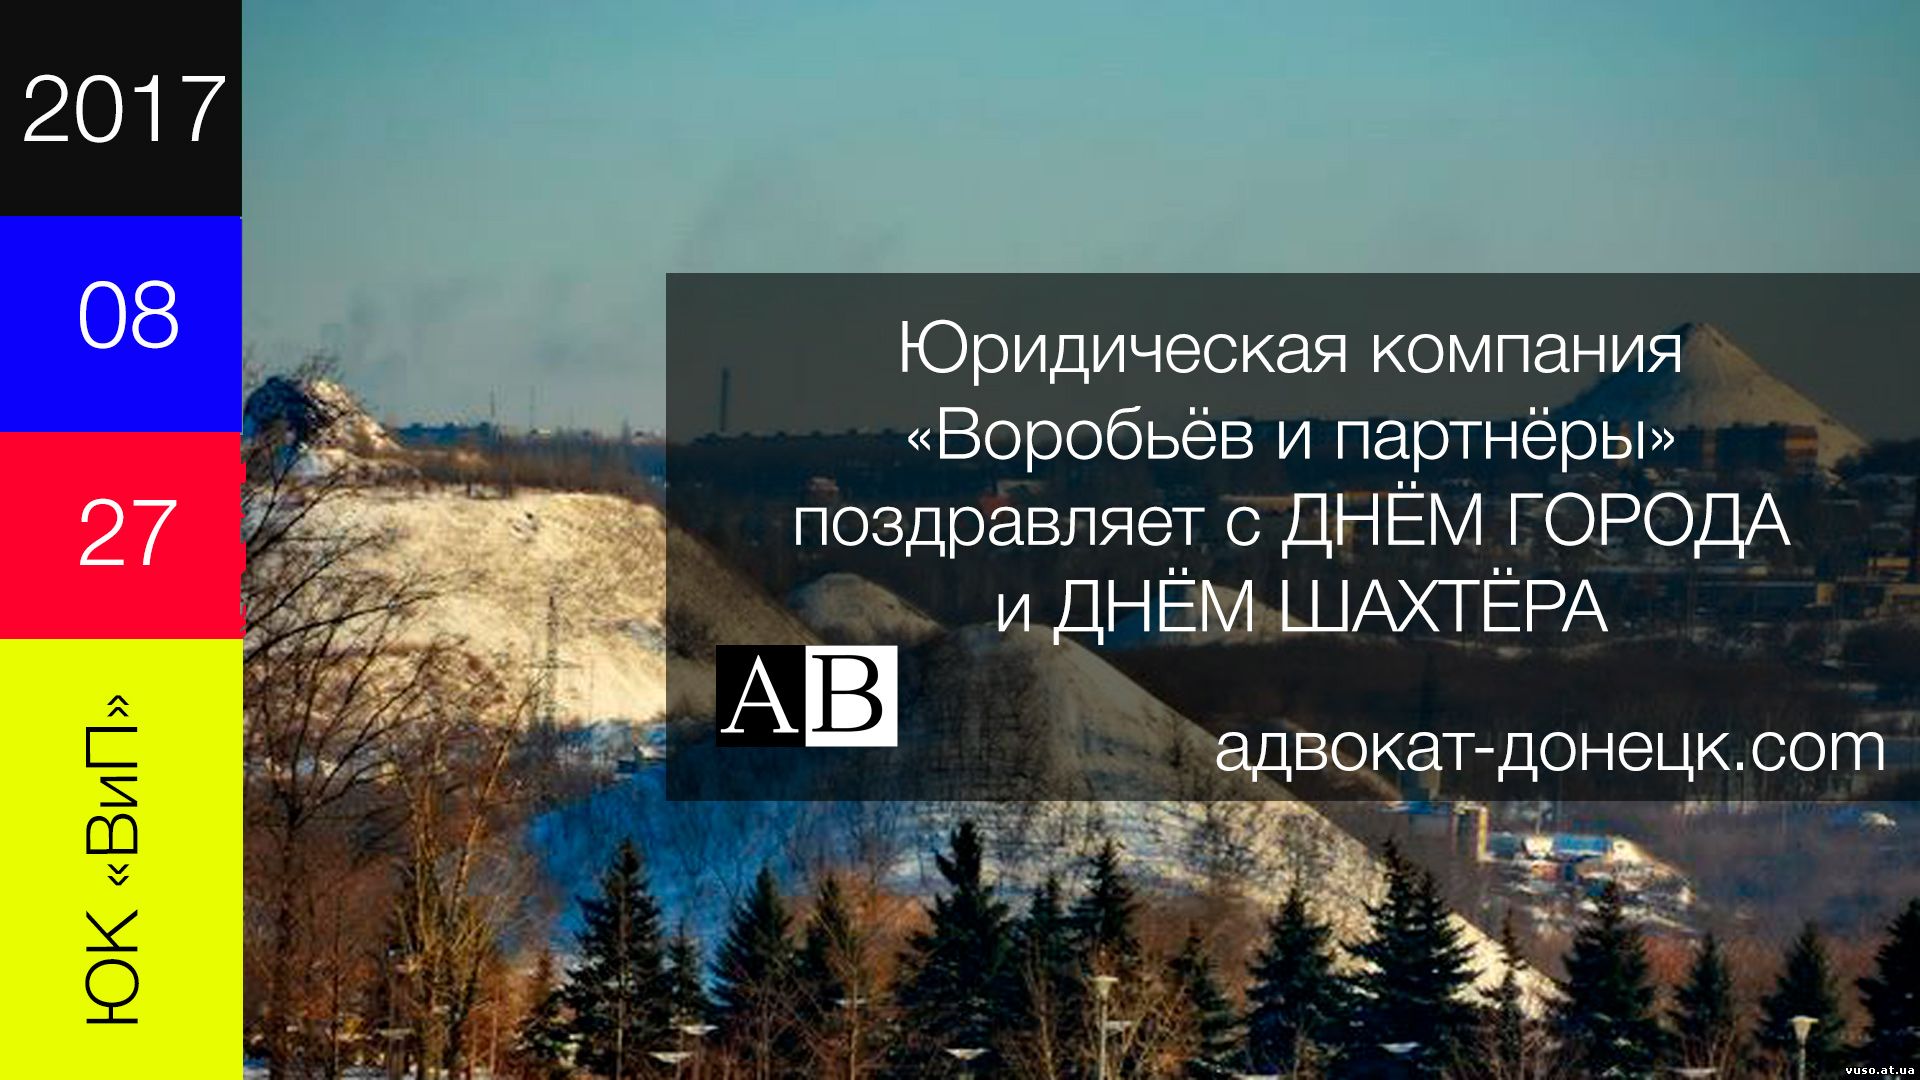 Воробьев и партнеры поздравляет с Днем города Донецка и днем шахтера